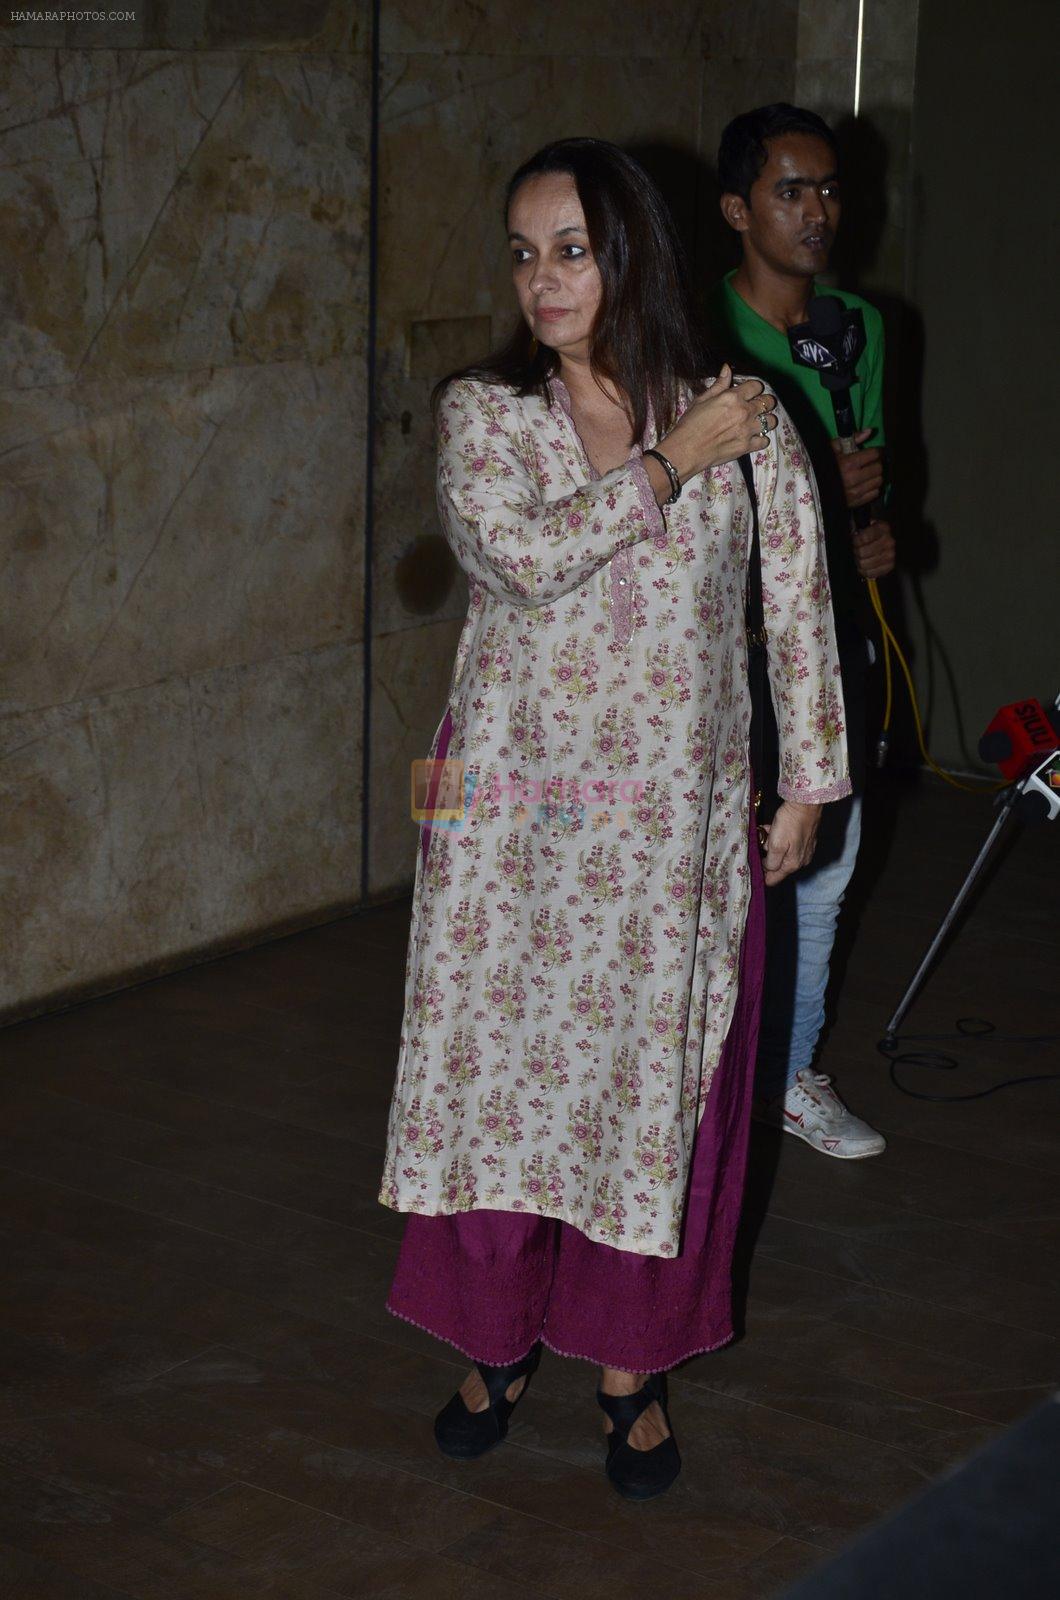 Soni Razdan at the Screening of the film Rang Rasiya in Lightbox on 5th Nov 2014